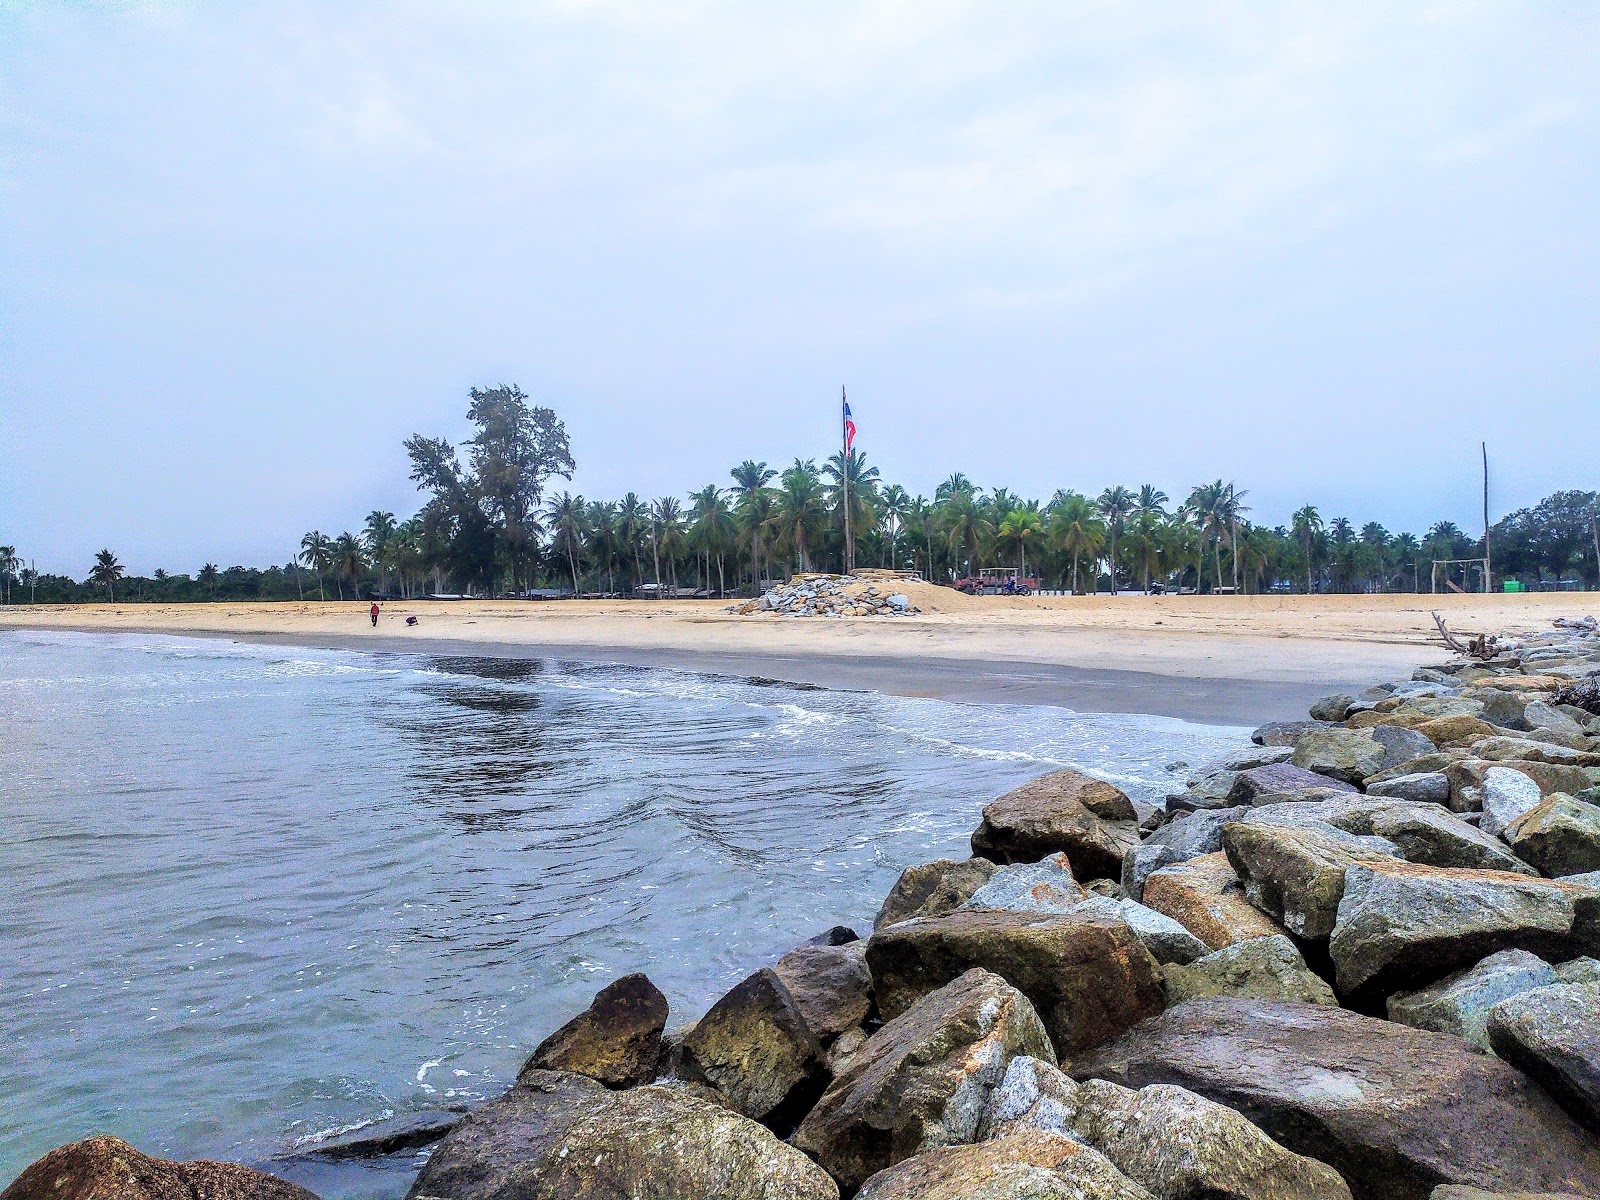 Photo de Pulau Panjang Beach - endroit populaire parmi les connaisseurs de la détente